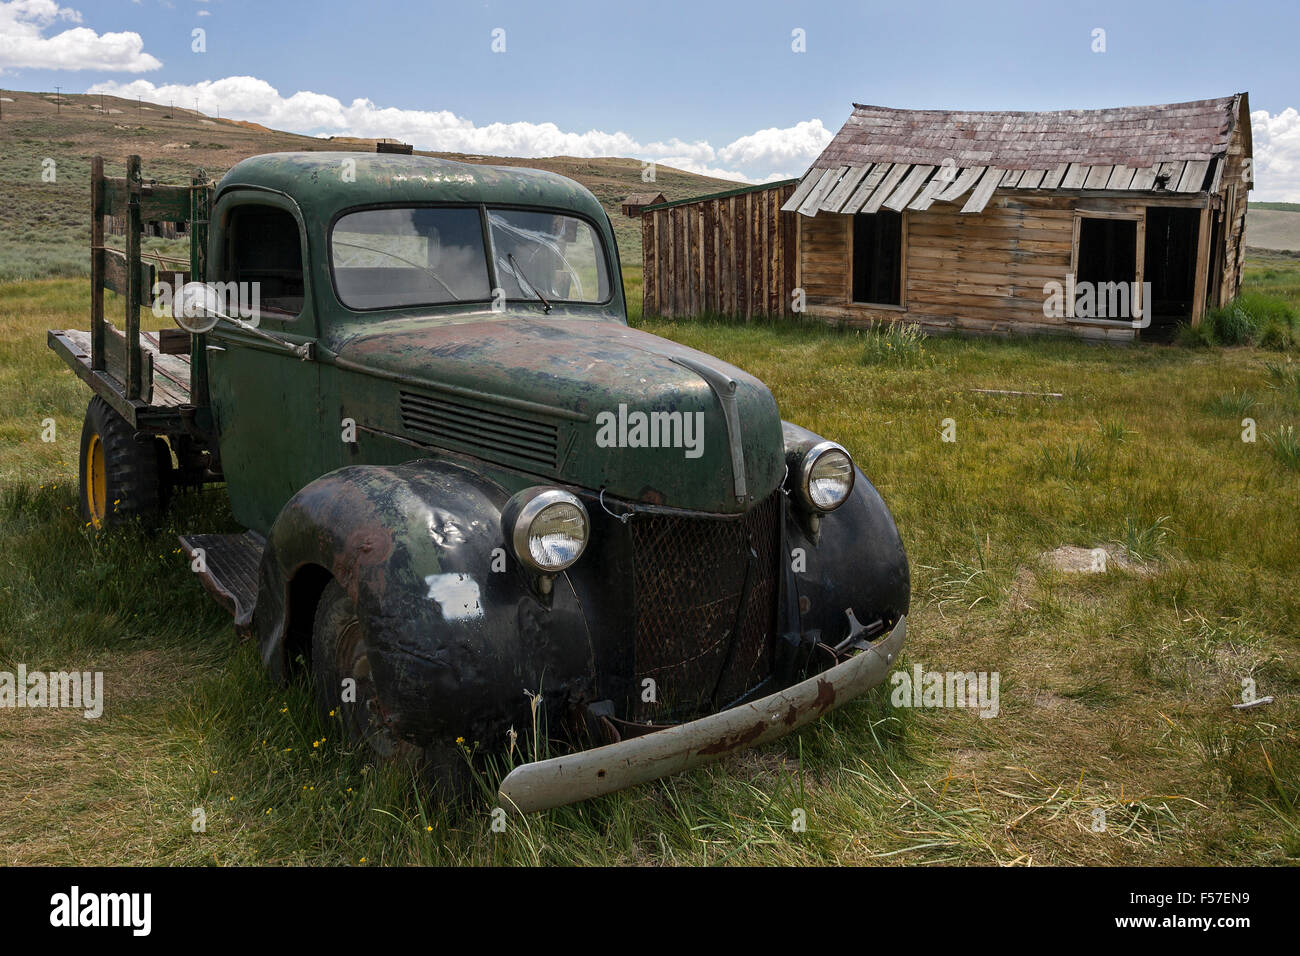 Vintage car construit dans les années 30, vieille maison de bois, ville fantôme, ancienne ville minière, Bodie State Historic Park, Bodie, en Californie Banque D'Images